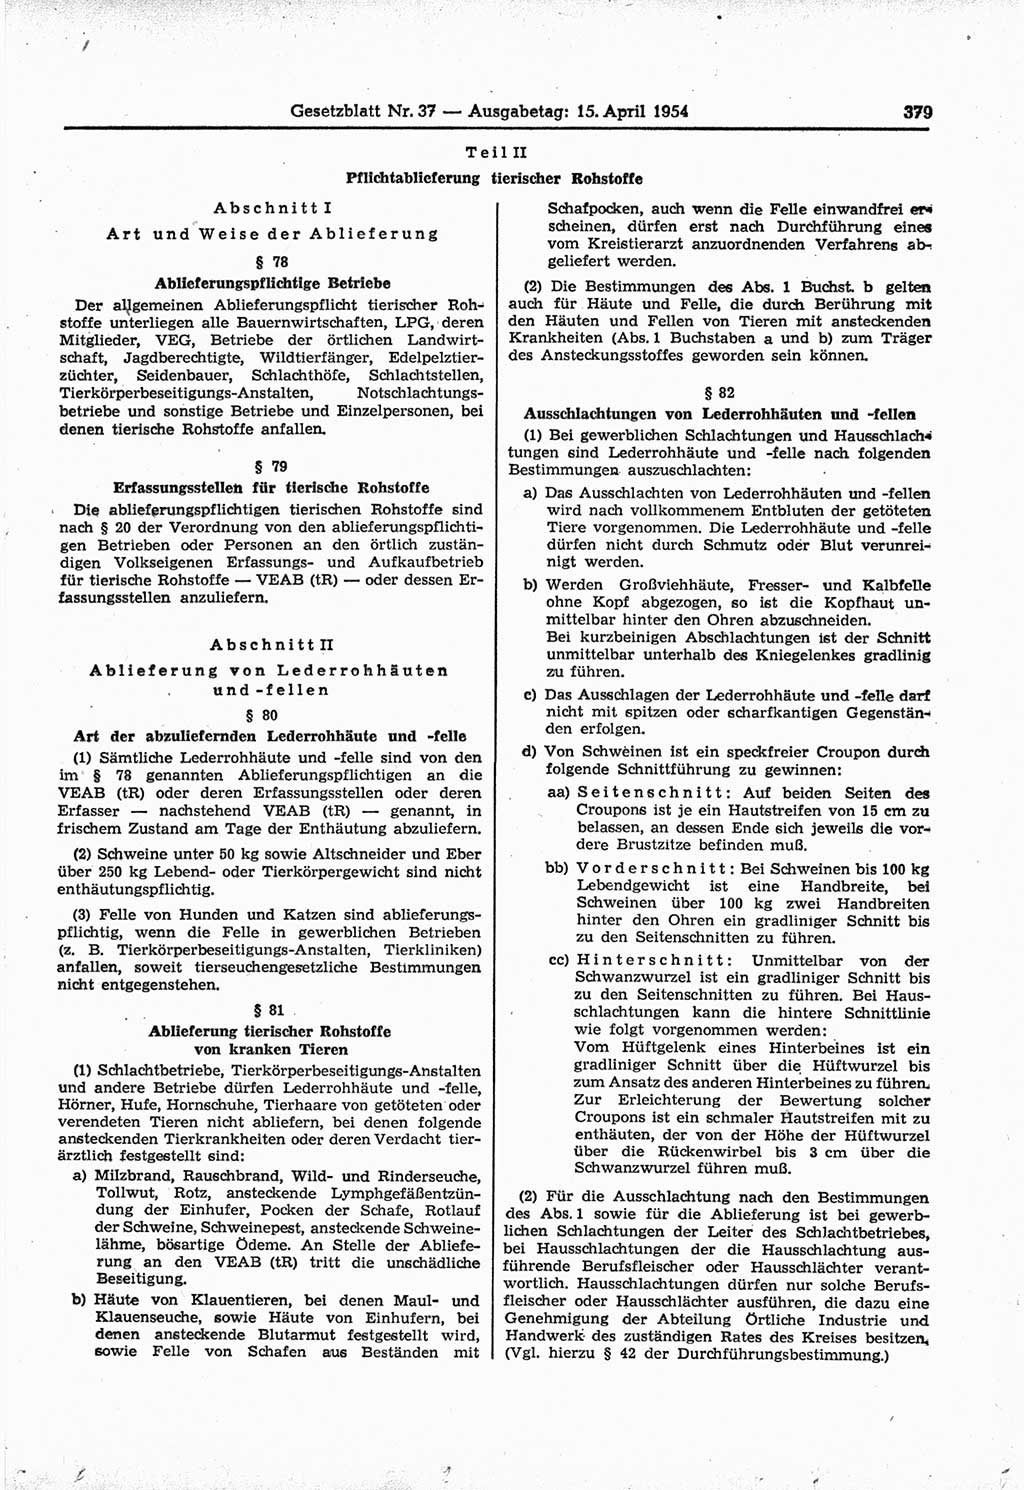 Gesetzblatt (GBl.) der Deutschen Demokratischen Republik (DDR) 1954, Seite 379 (GBl. DDR 1954, S. 379)